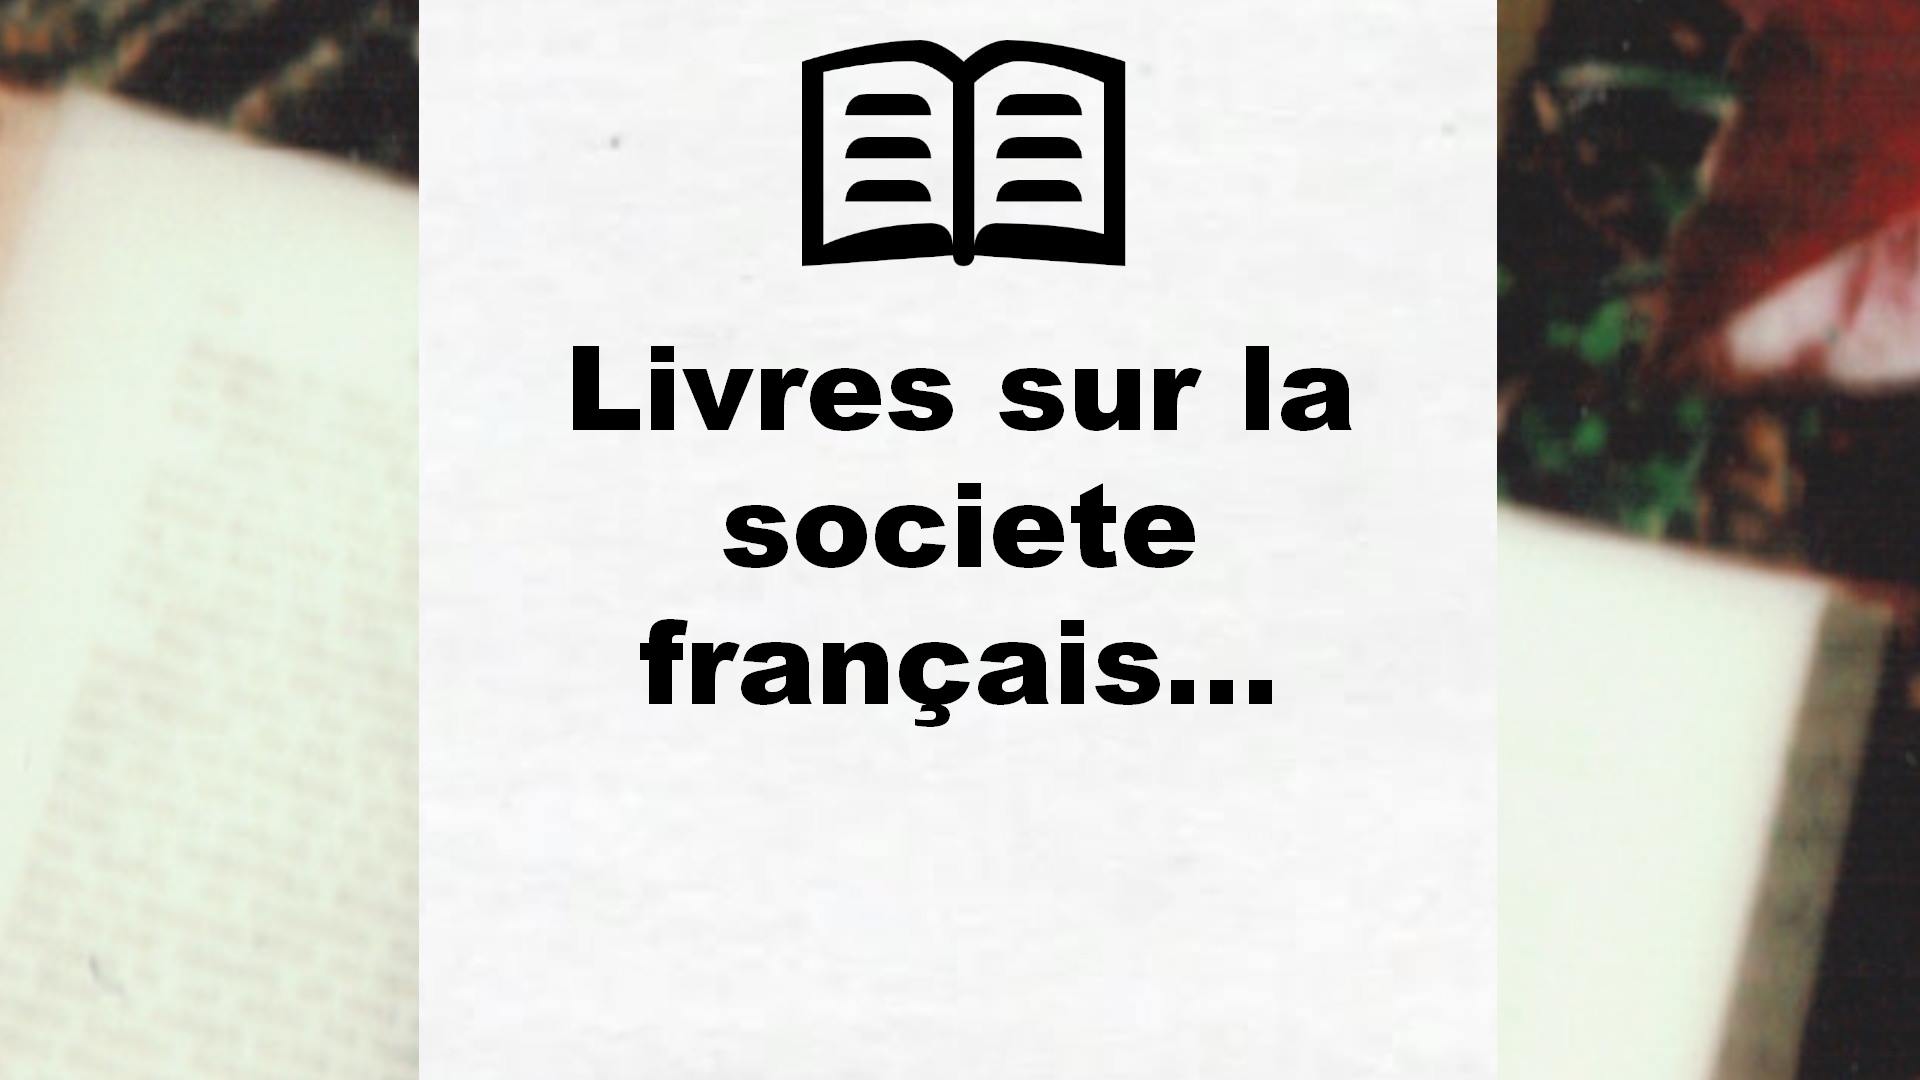 Livres sur la societe française